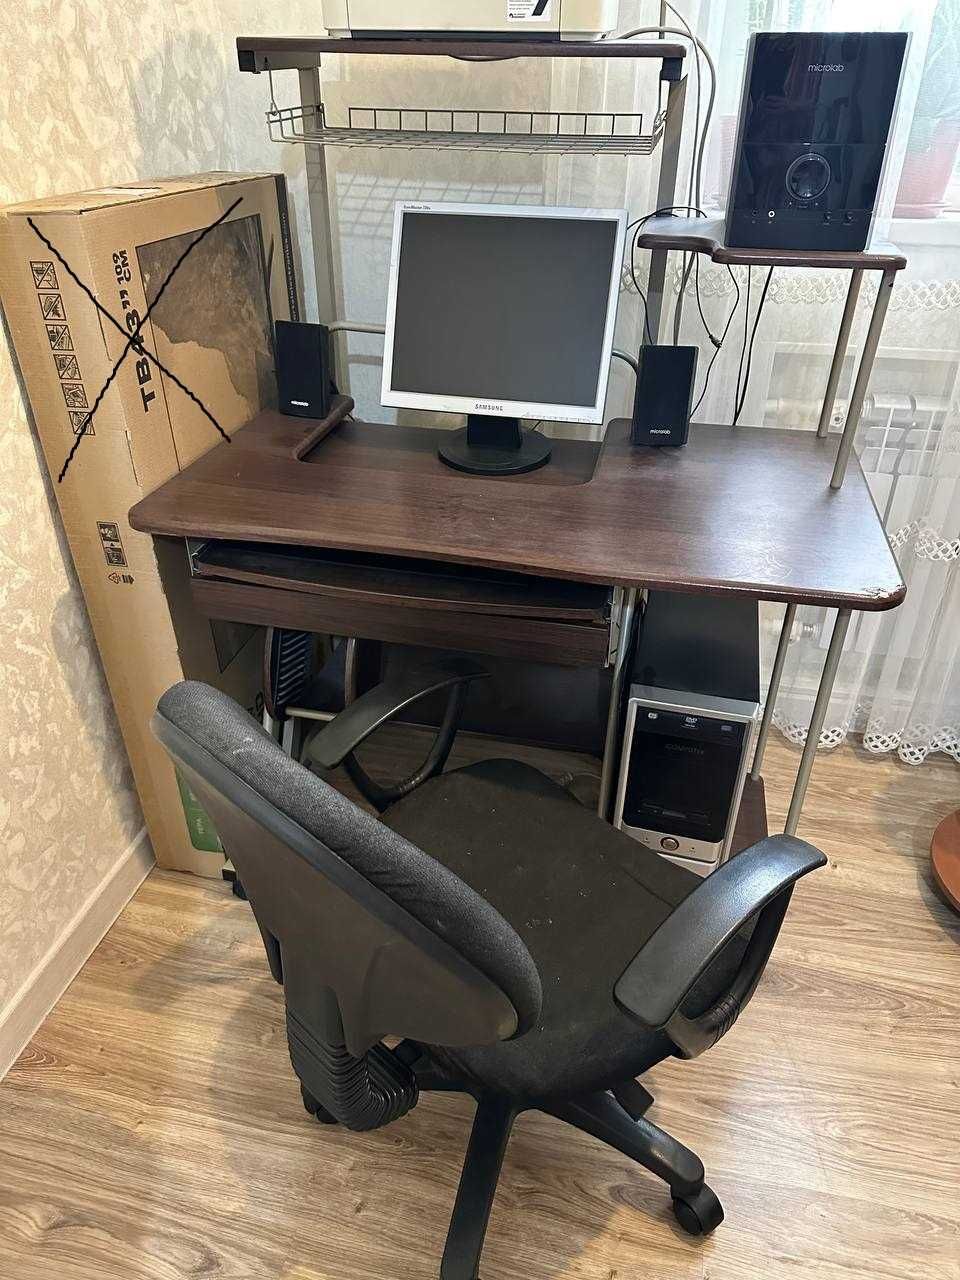 Срочно! Продаётся шкаф, компьютер, кресло, стол компьютерный!